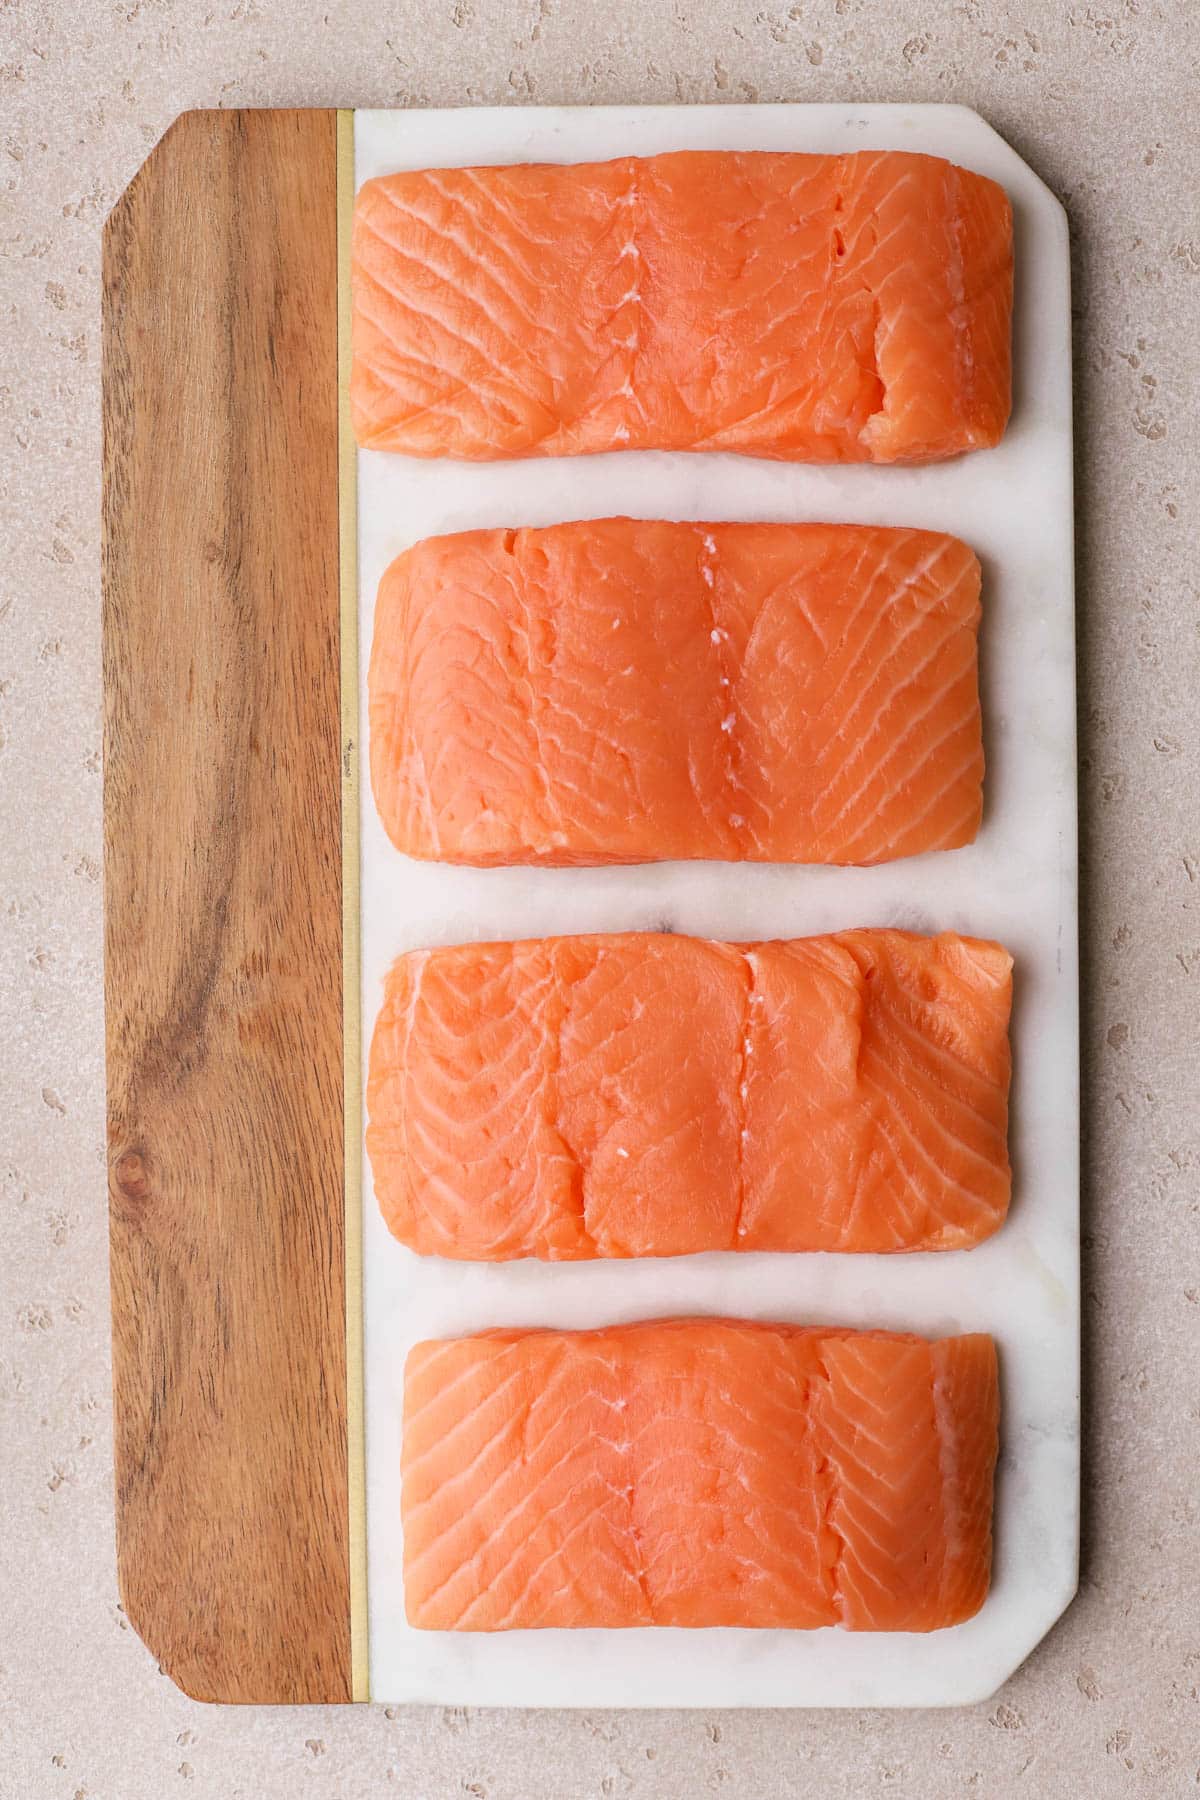 Salmon fillets. 